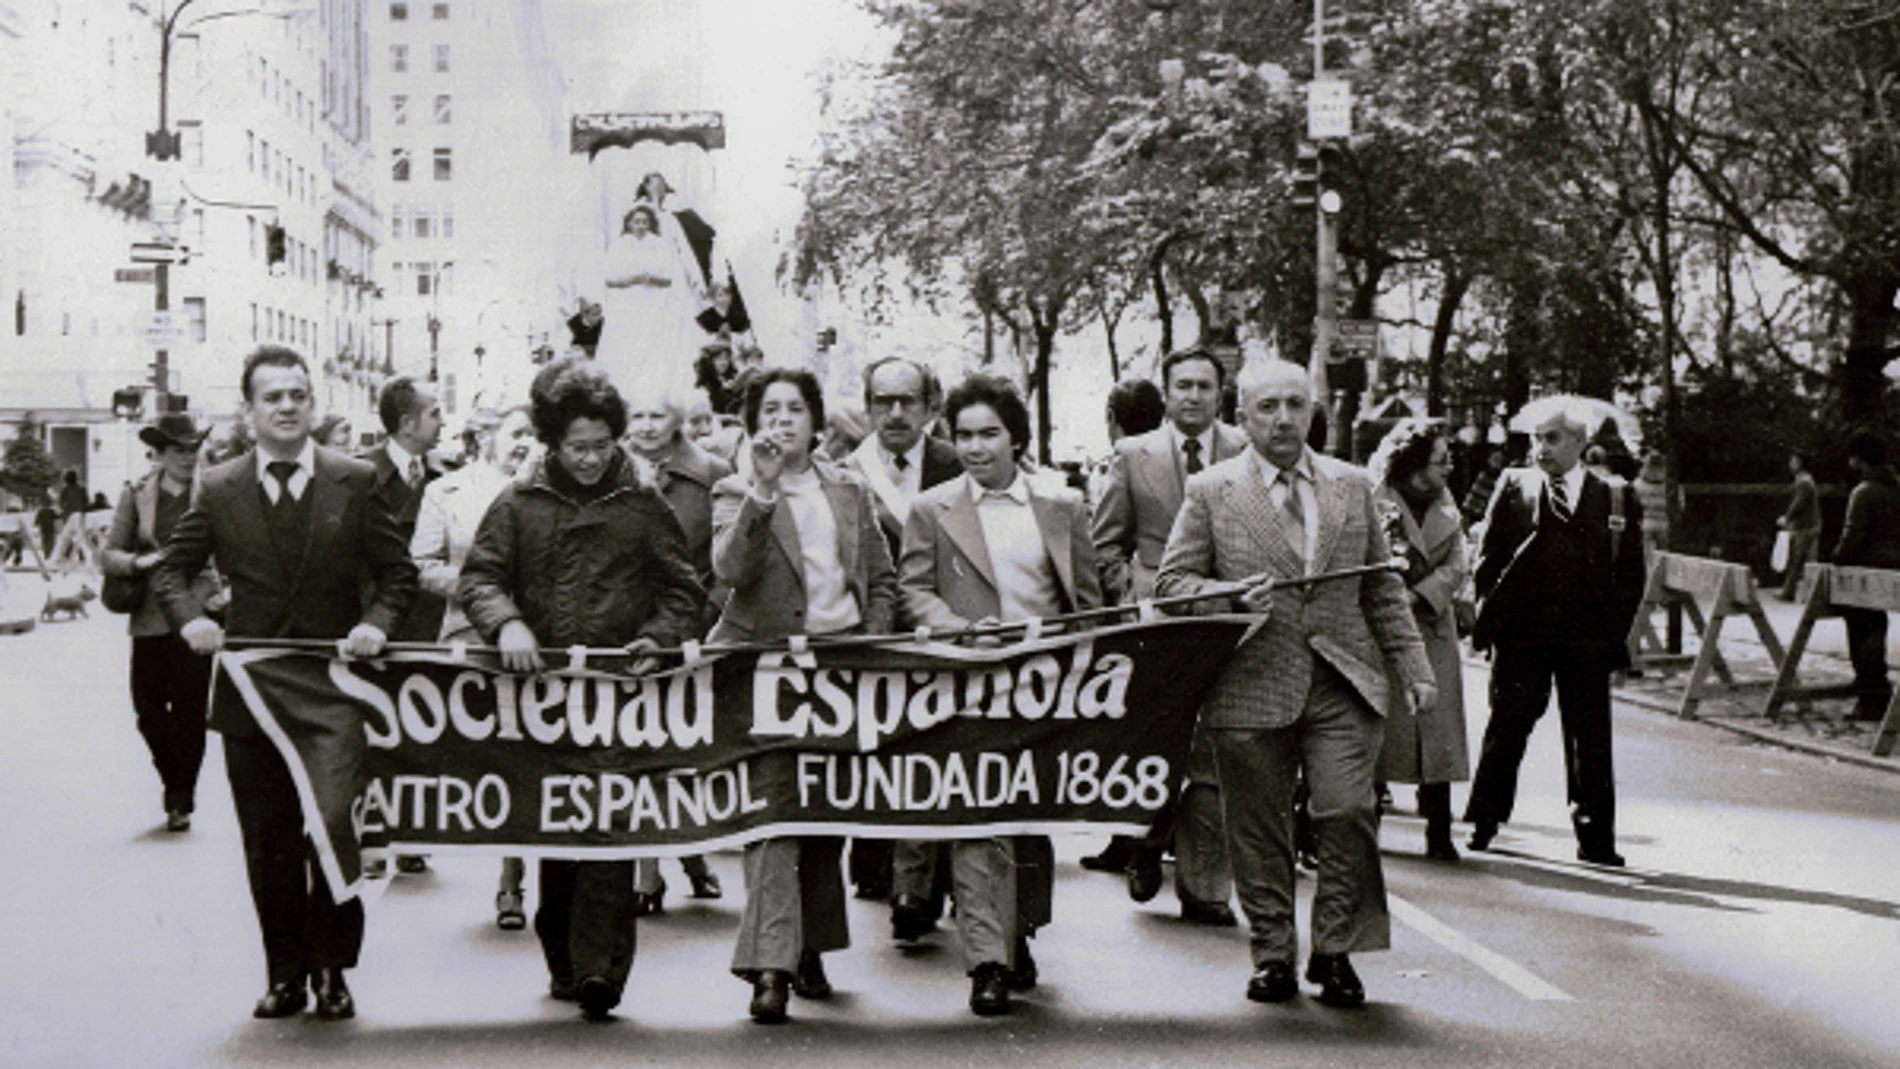 Una imagen de la comunidad española en Nueva York